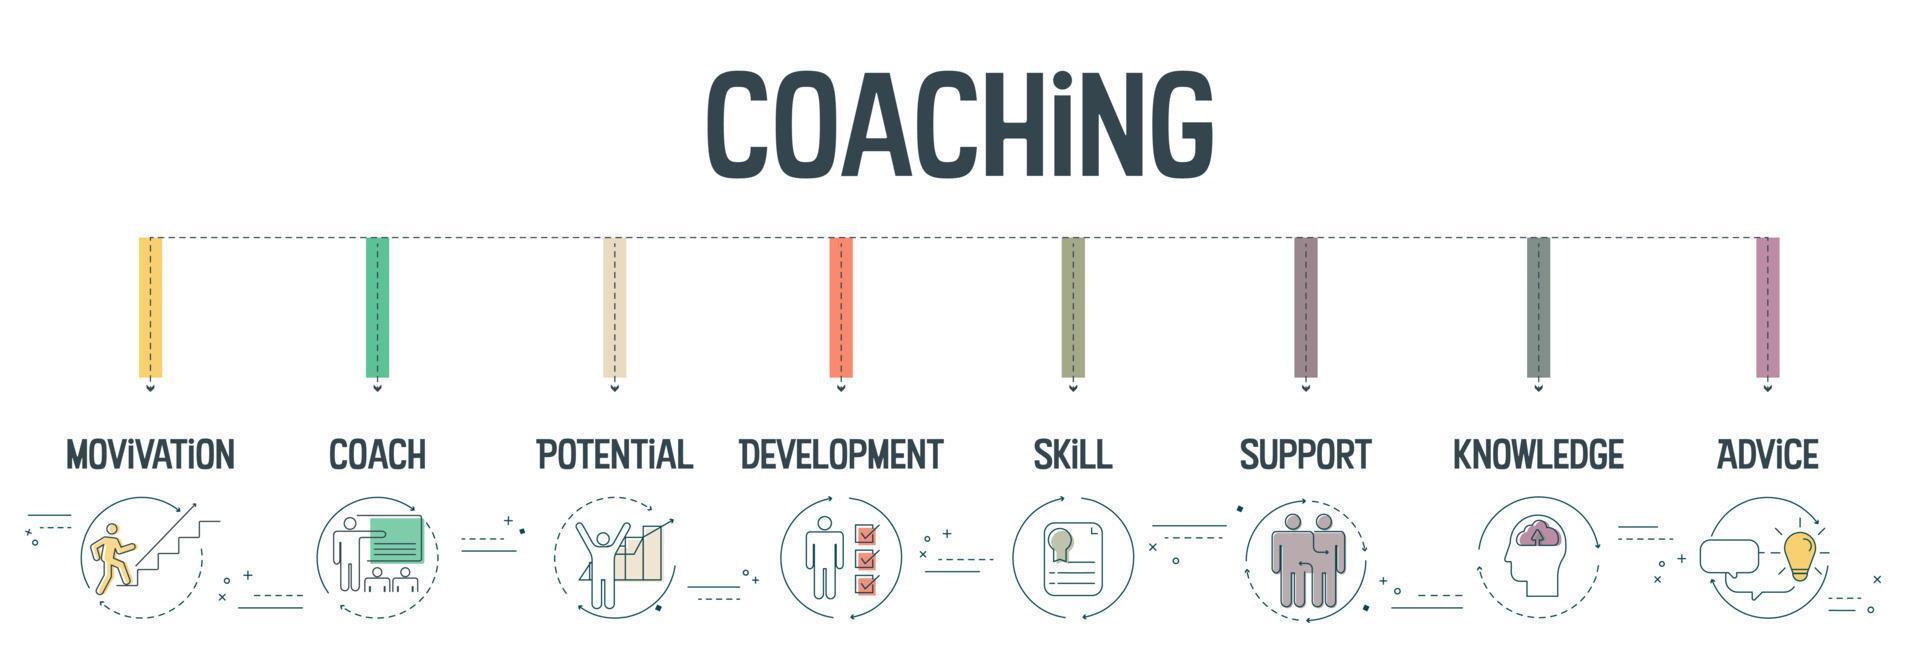 coaching banner koncept har 8 steg att analysera såsom motivation, coach, potential, utveckling, skicklighet, stöd, kunskap och rådgivning.business infographic för bildpresentation eller webbanner. vektor. vektor